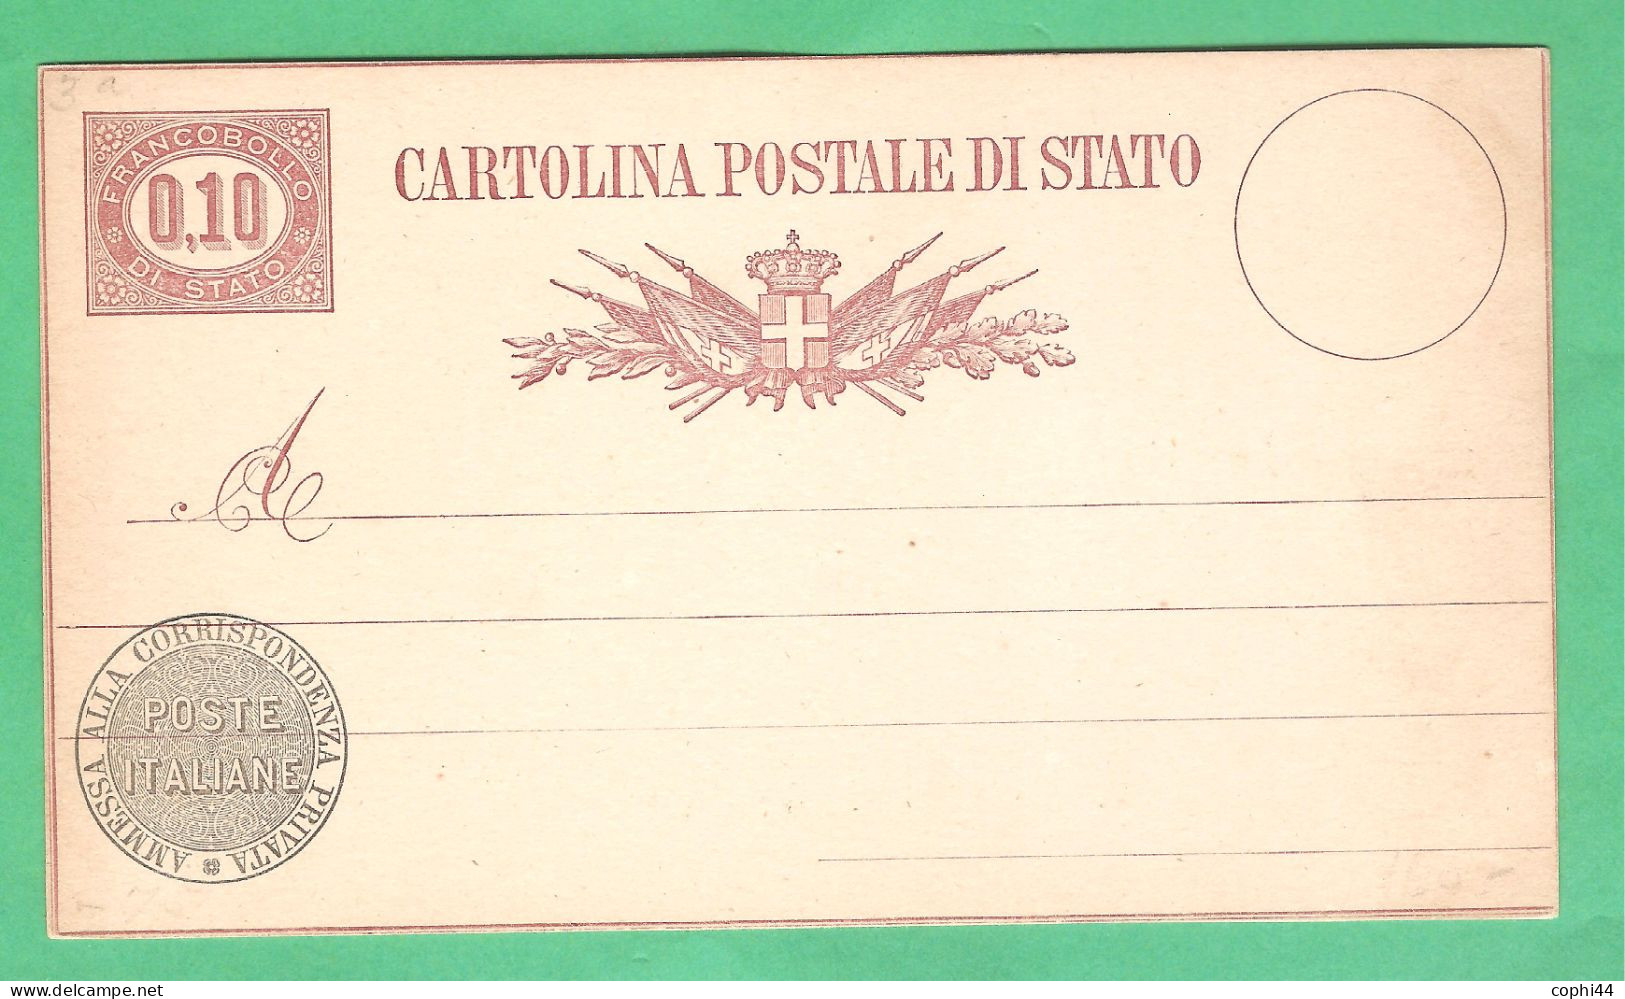 REGNO D'ITALIA 1877 VEII CARTOLINA POSTALE SERVIZIO DI STATO N. 3 Lire 0,10 NUOVA 2 FILETTI BUONE CONDIZIONI - Entiers Postaux